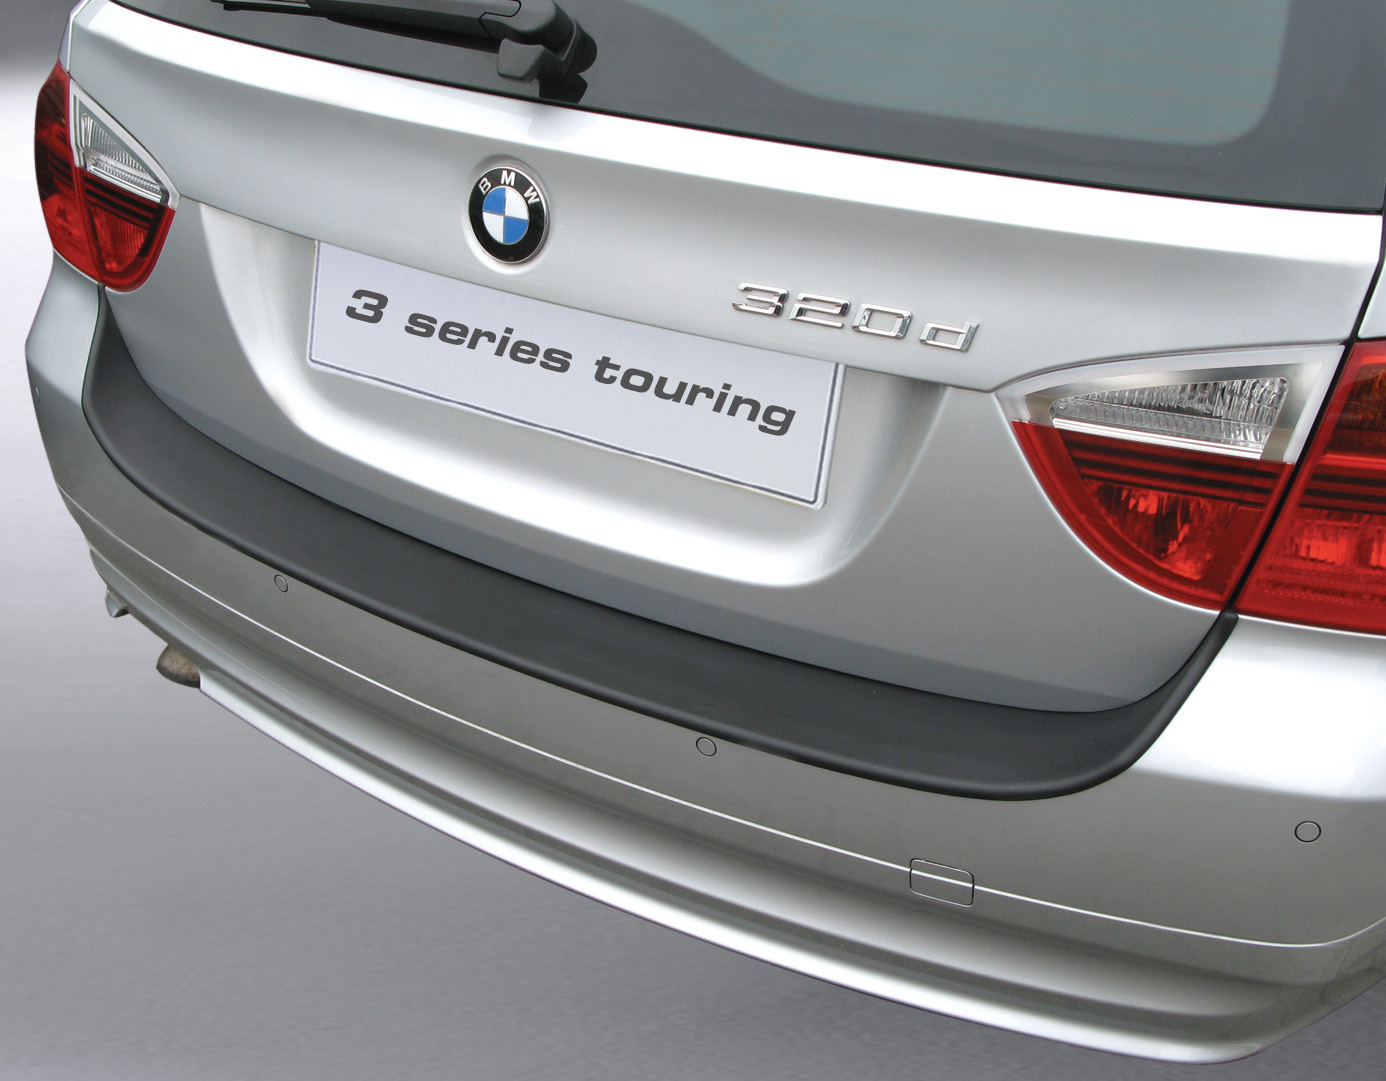 Ladekantenschutz mit Abkantung passend für BMW 3er Touring (Kombi) E91 (vor  Facelift) ab BJ. 09.2005 bis 08.2008 (nicht für Fahrzeuge mit M Paket) ABS  Farbe schwarz